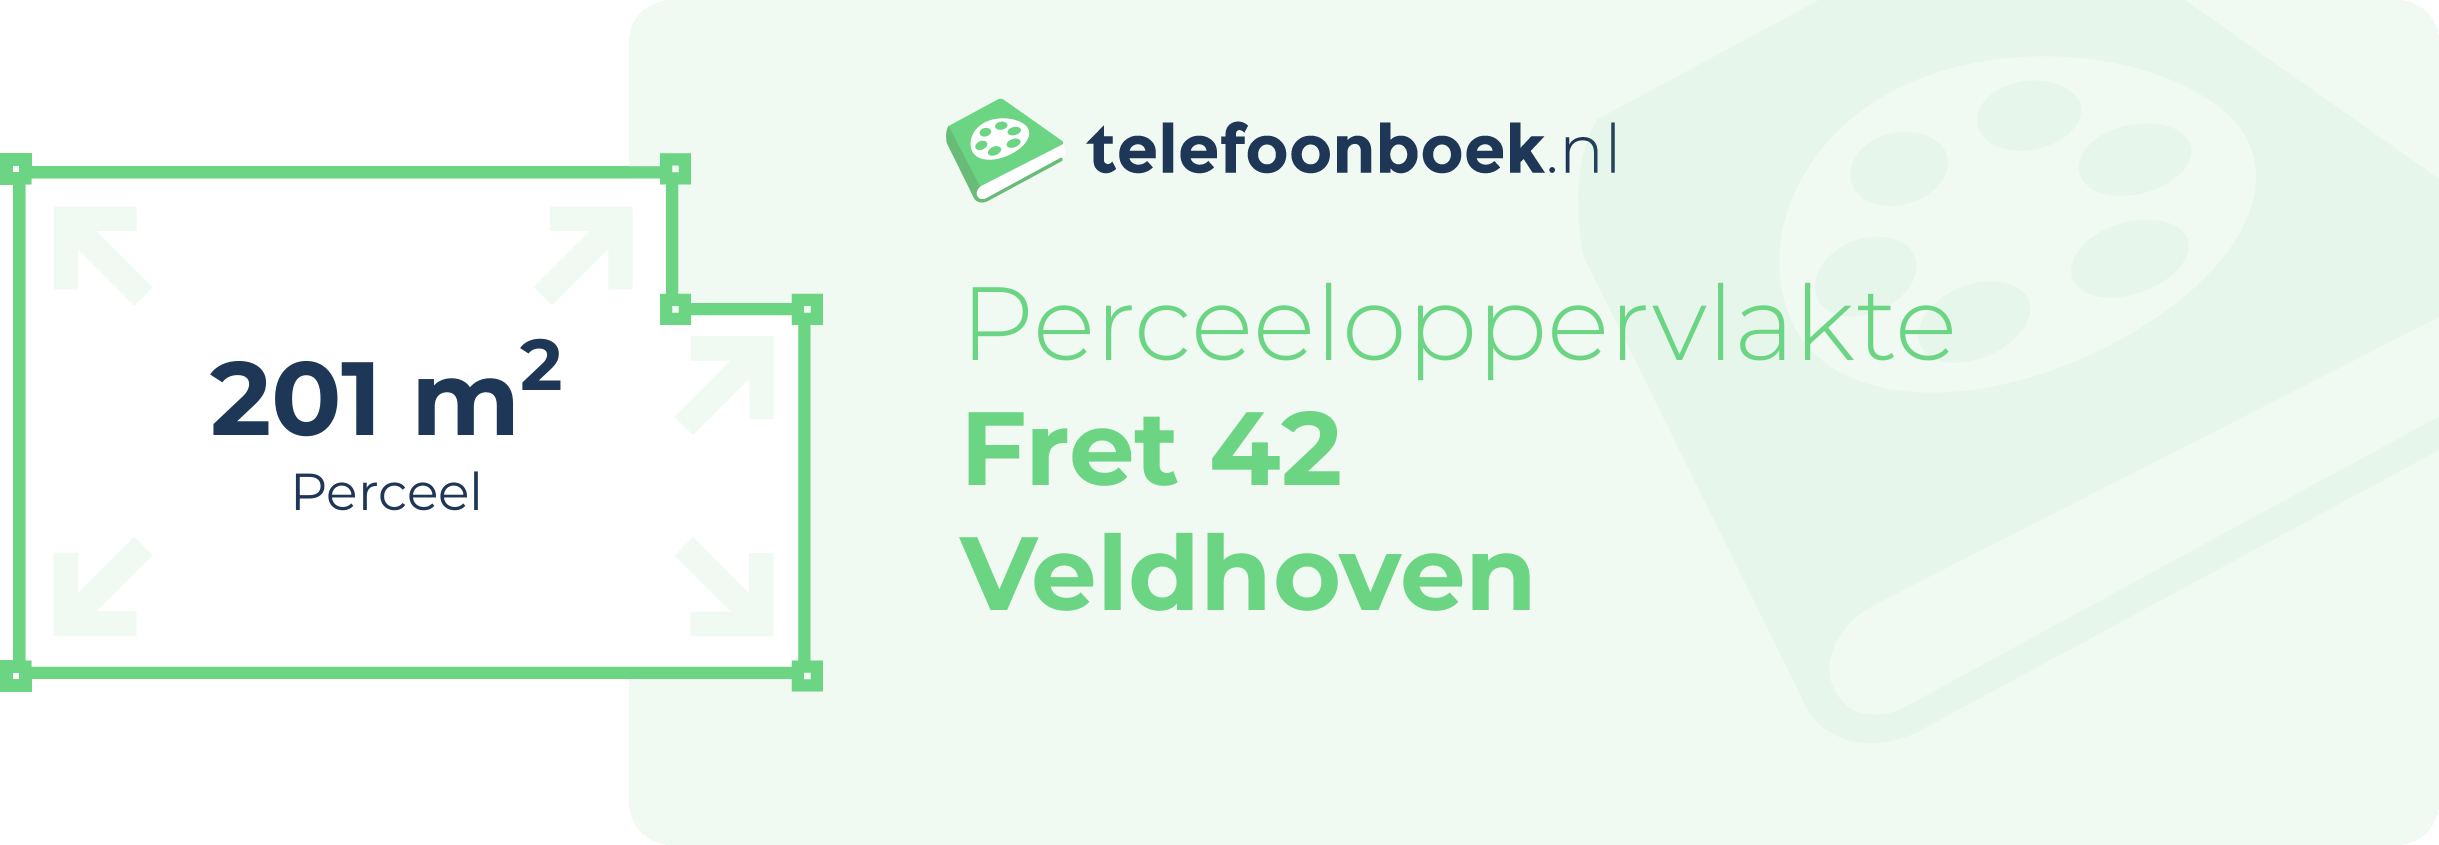 Perceeloppervlakte Fret 42 Veldhoven